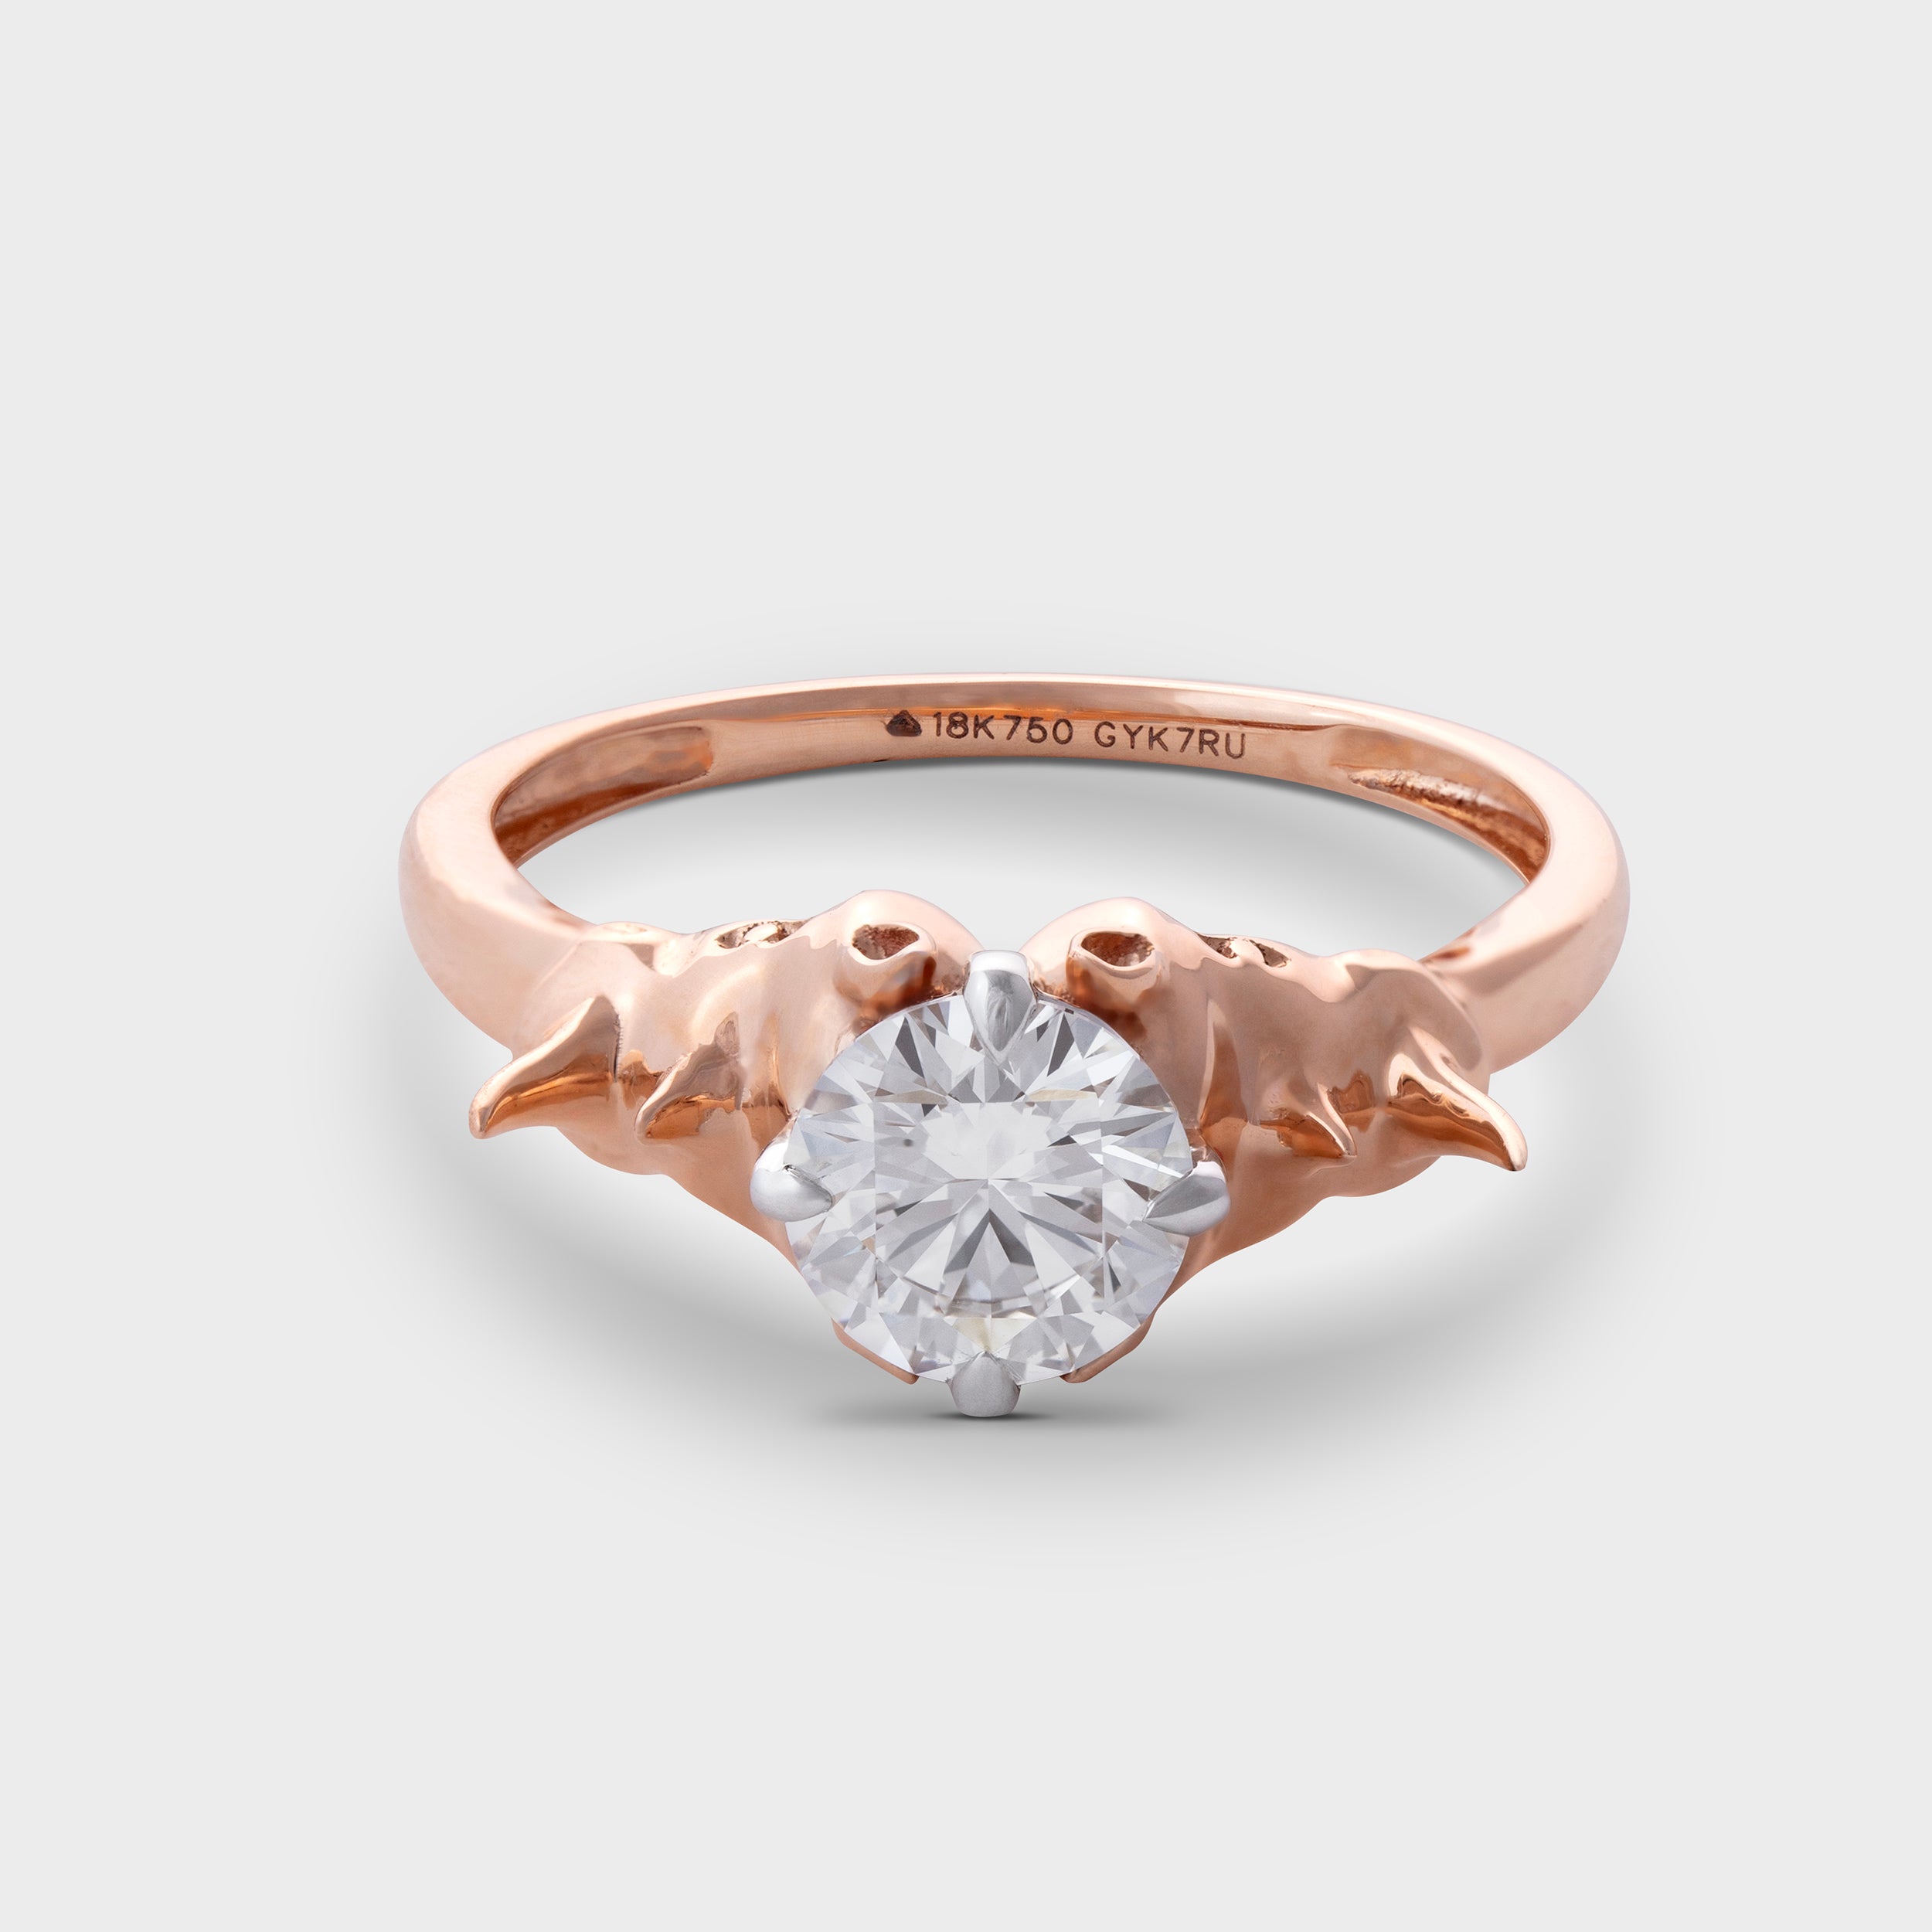 Rhino Embrace Lab-Grown Diamond Ring | SKU: 0019503844